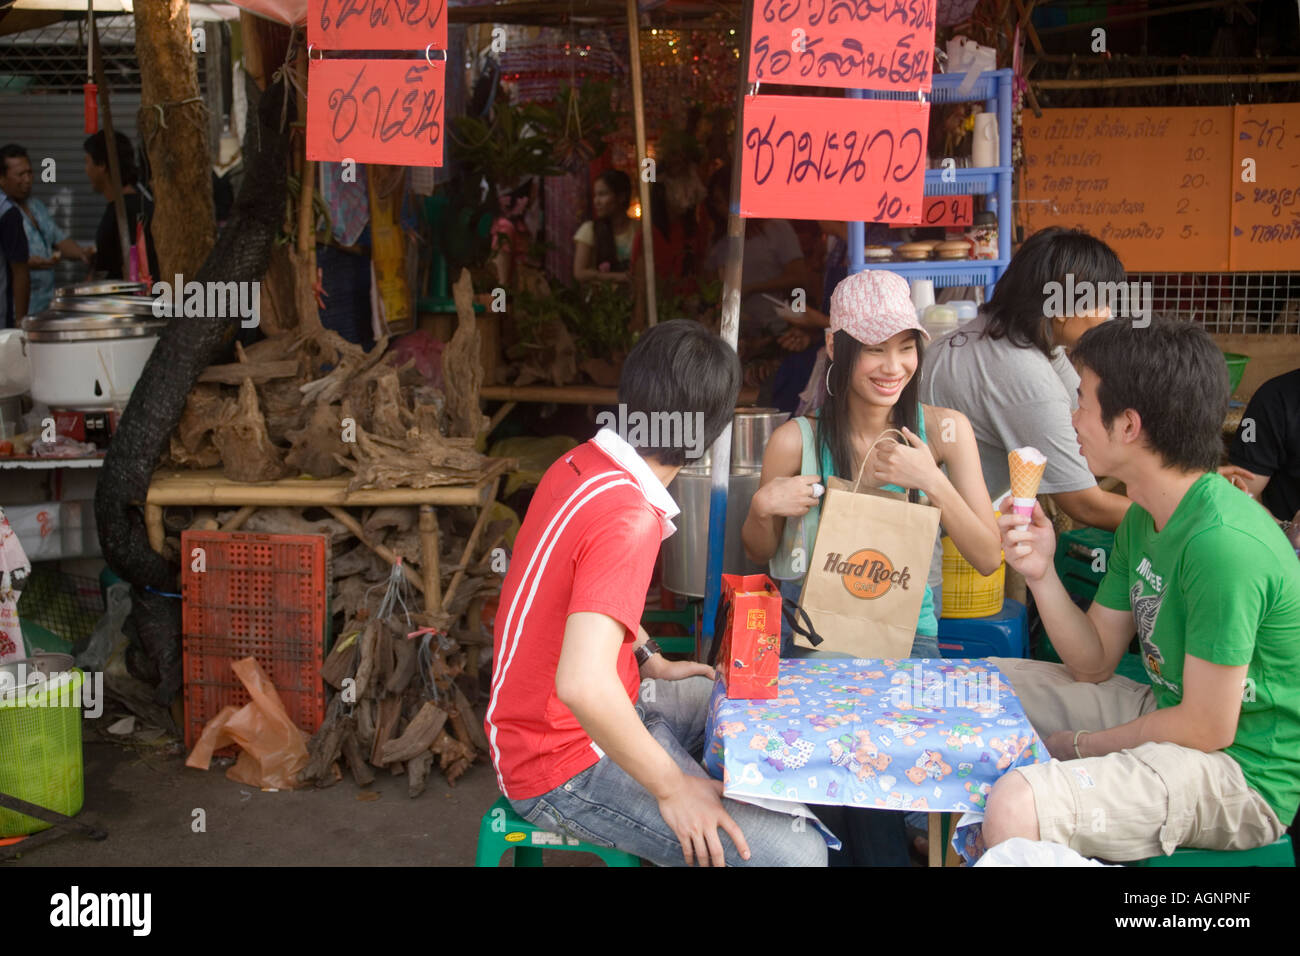 Trois jeunes gens assis à une table près d'une food on eating ice cream Suan Chatuchak Weekend Market Bangkok Thaïlande Banque D'Images